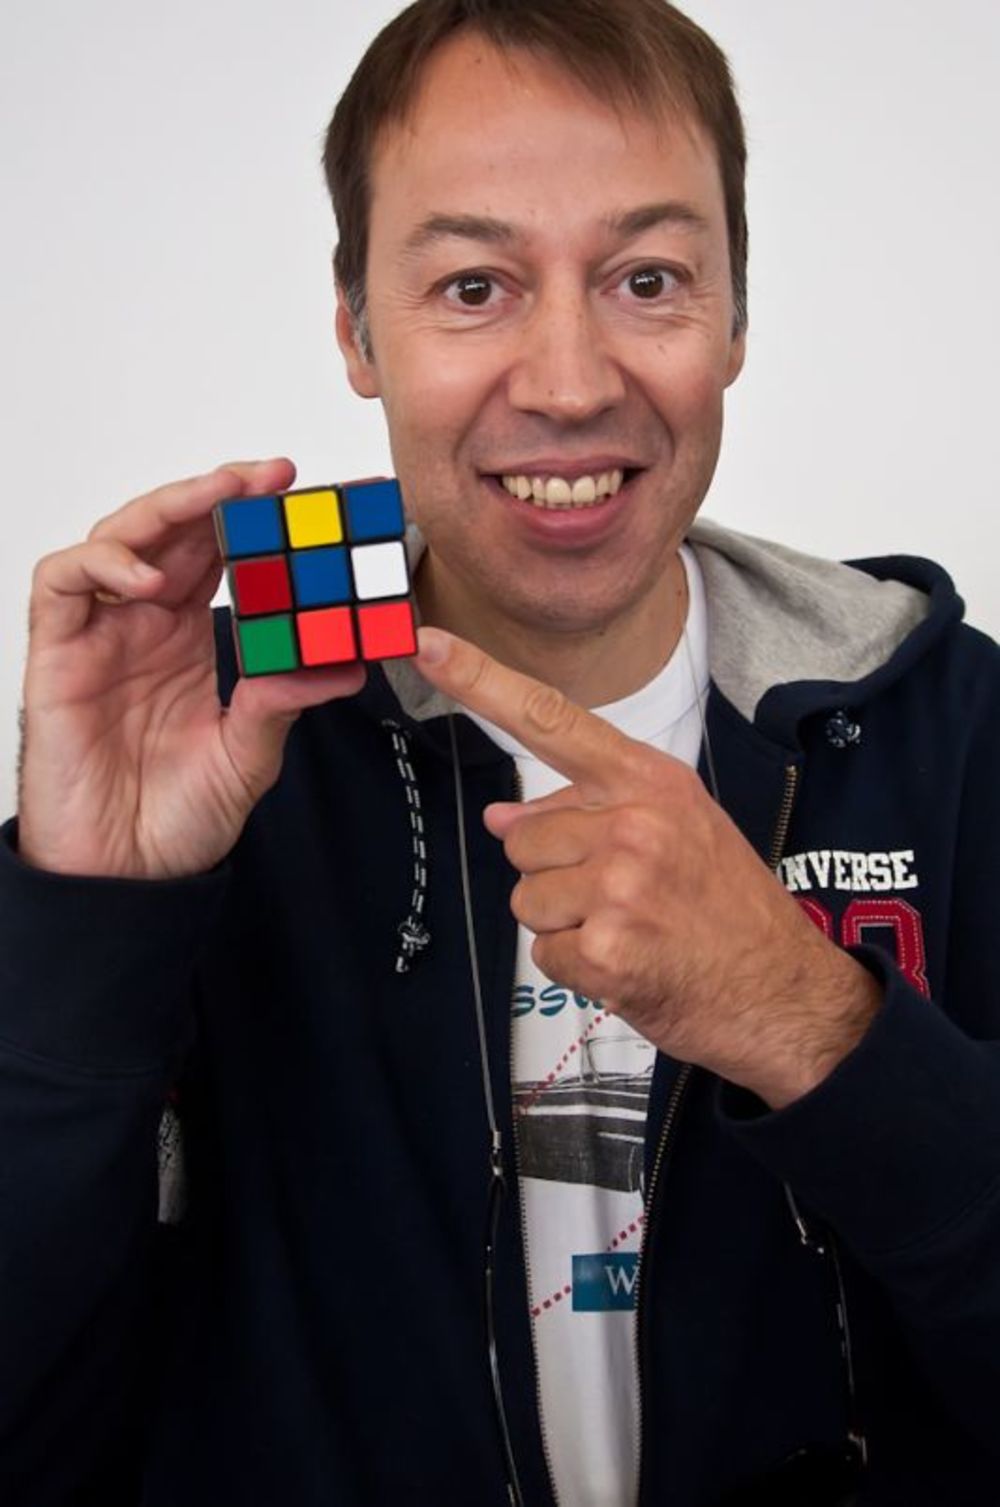 U okviru drugog međunarodnog takmičenja u sklapanju Rubikove kocke, ZTE Rubik Serbian Open 2013, u subotu, 23. marta, u Delta City-ju, organizovan je humanitarni VIP turnir za Tijanu. Zahvaljujući odzivu poznatih ličnosti iz javnog i kulturnog života, kao i ve